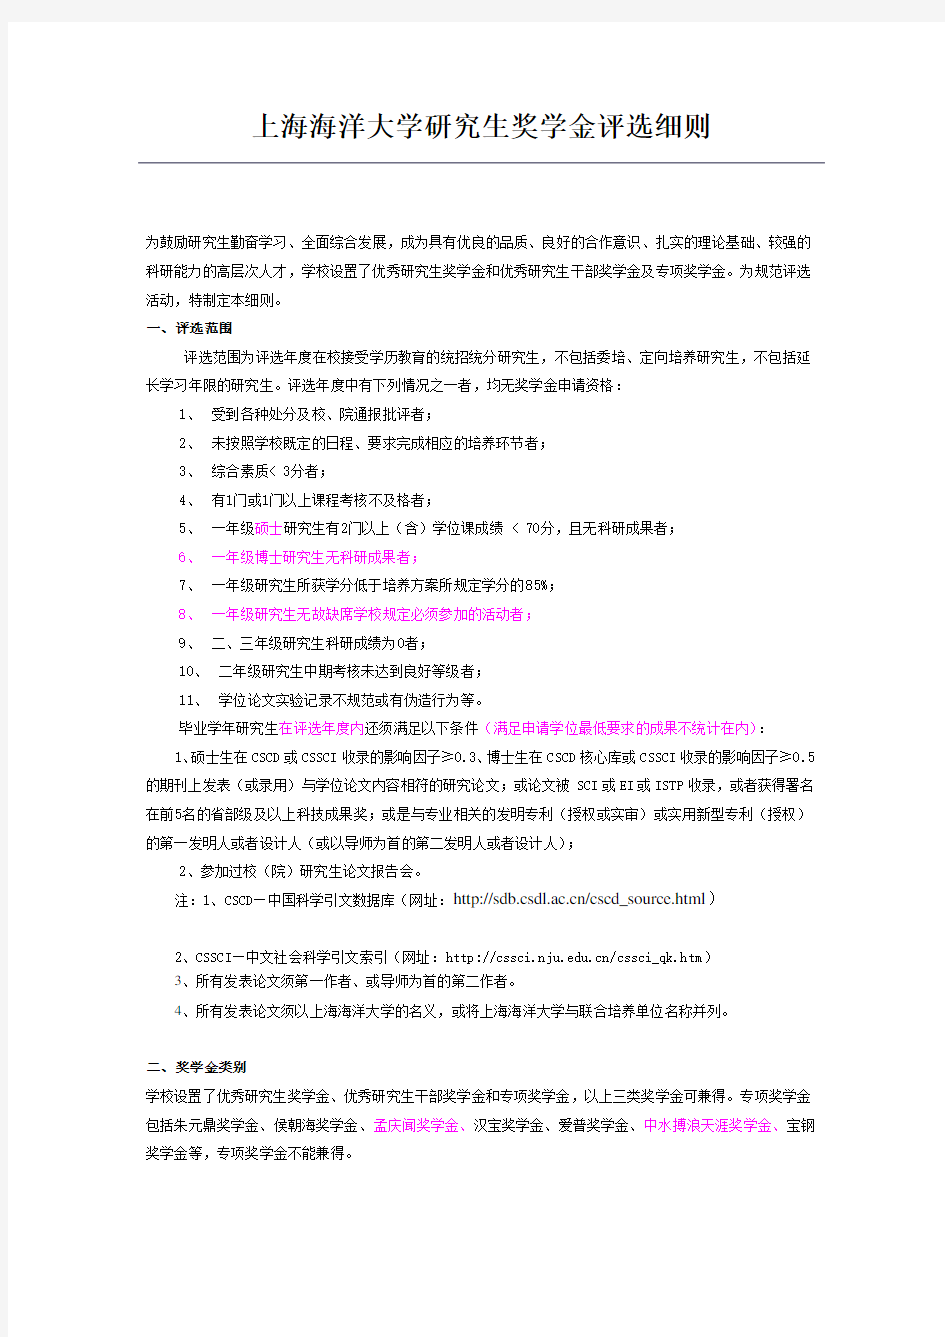 上海海洋大学研究生奖学金评选细则